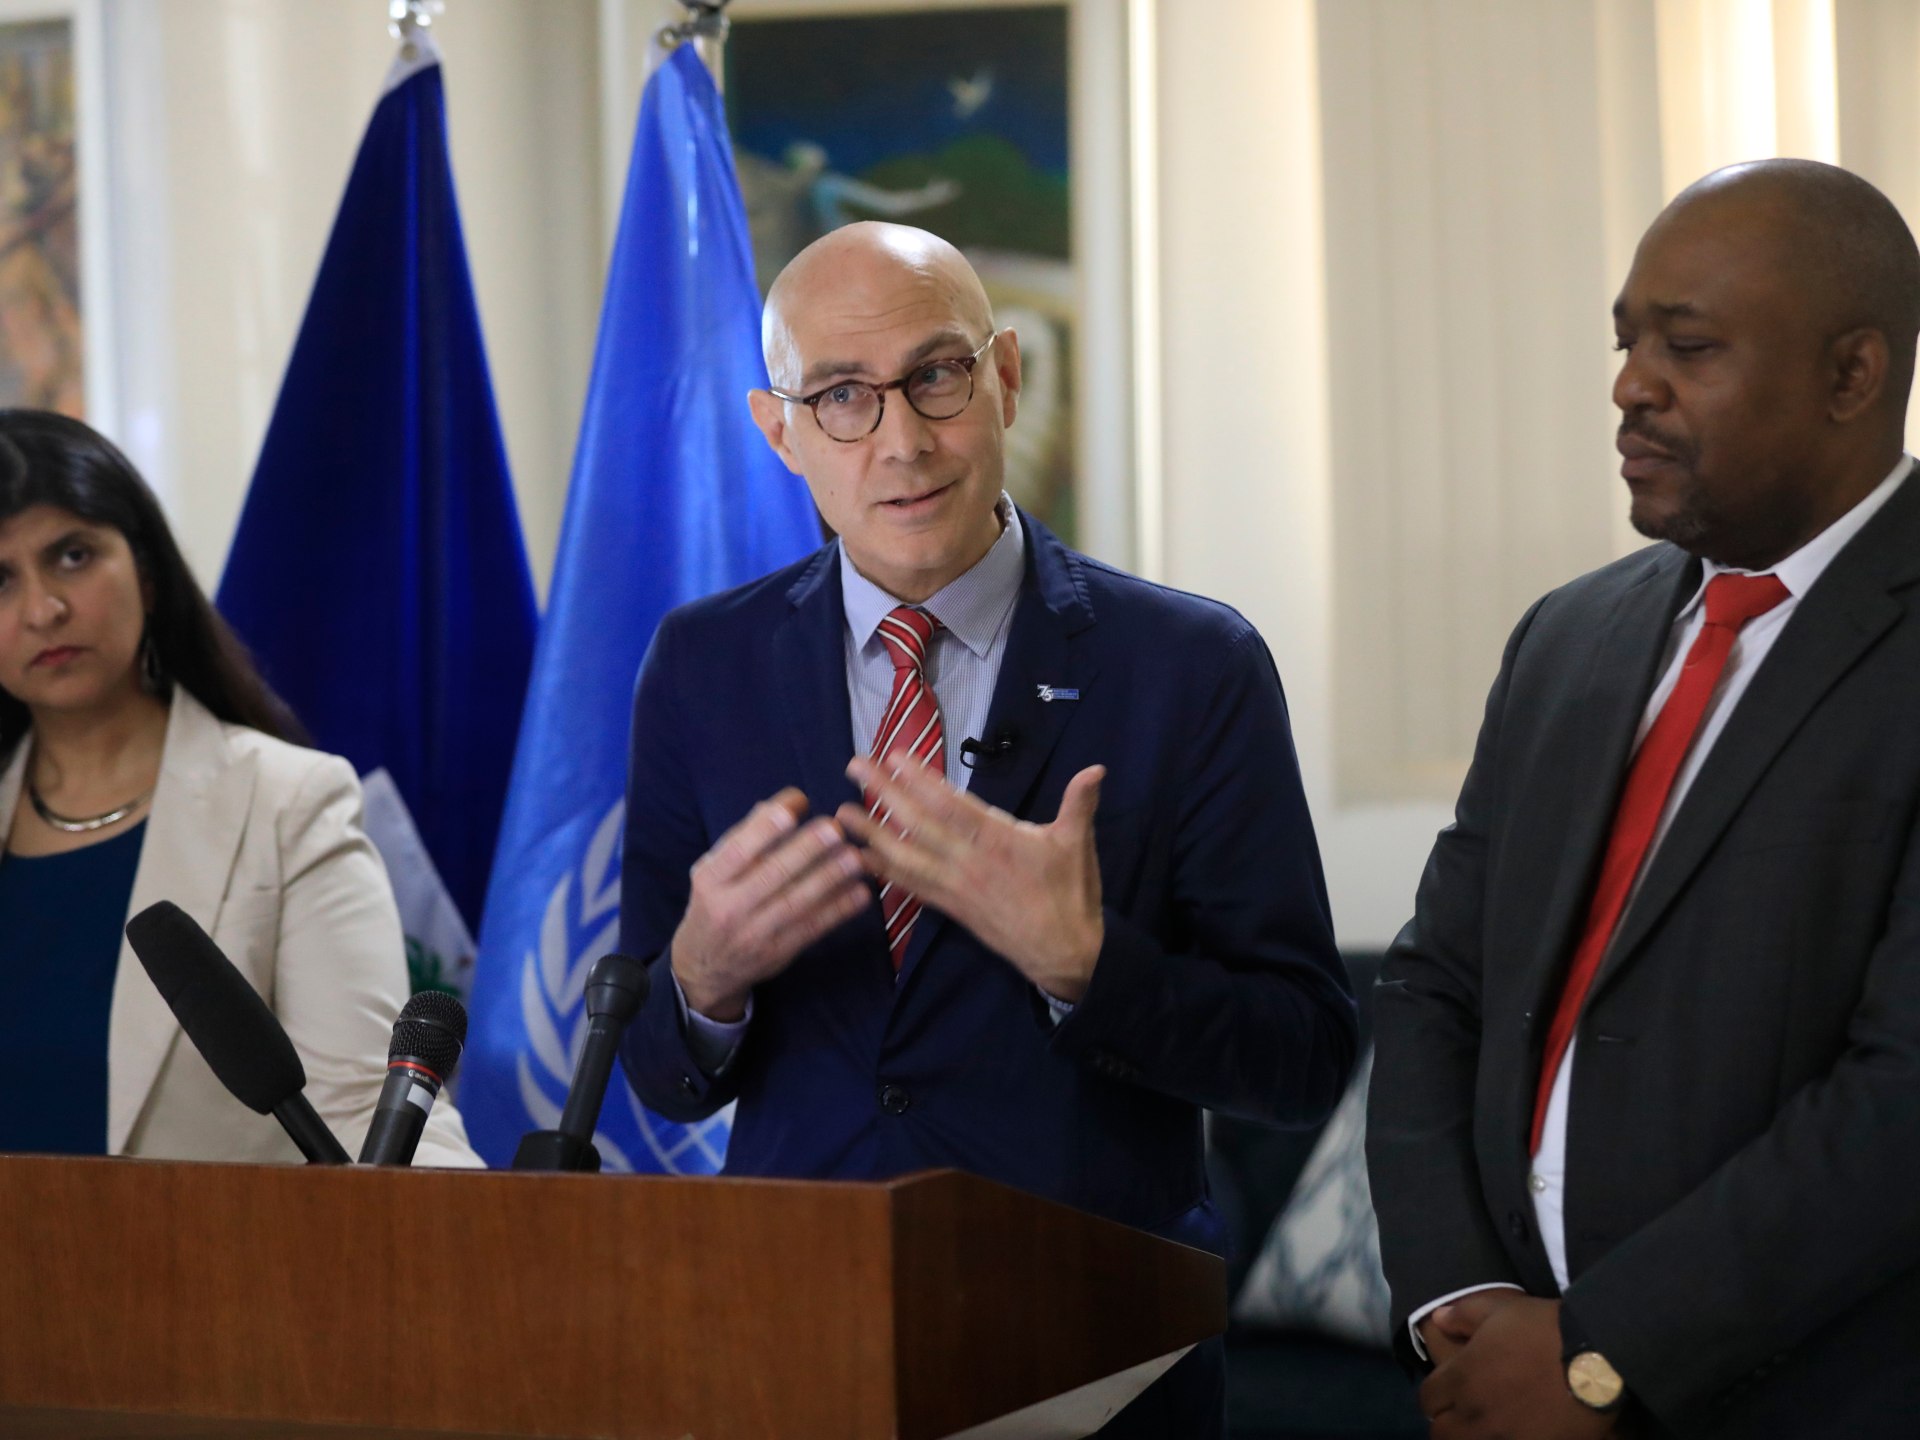 Le chef des droits de l’homme de l’ONU appelle les puissances internationales à aider Haïti |  Nouvelles du gouvernement